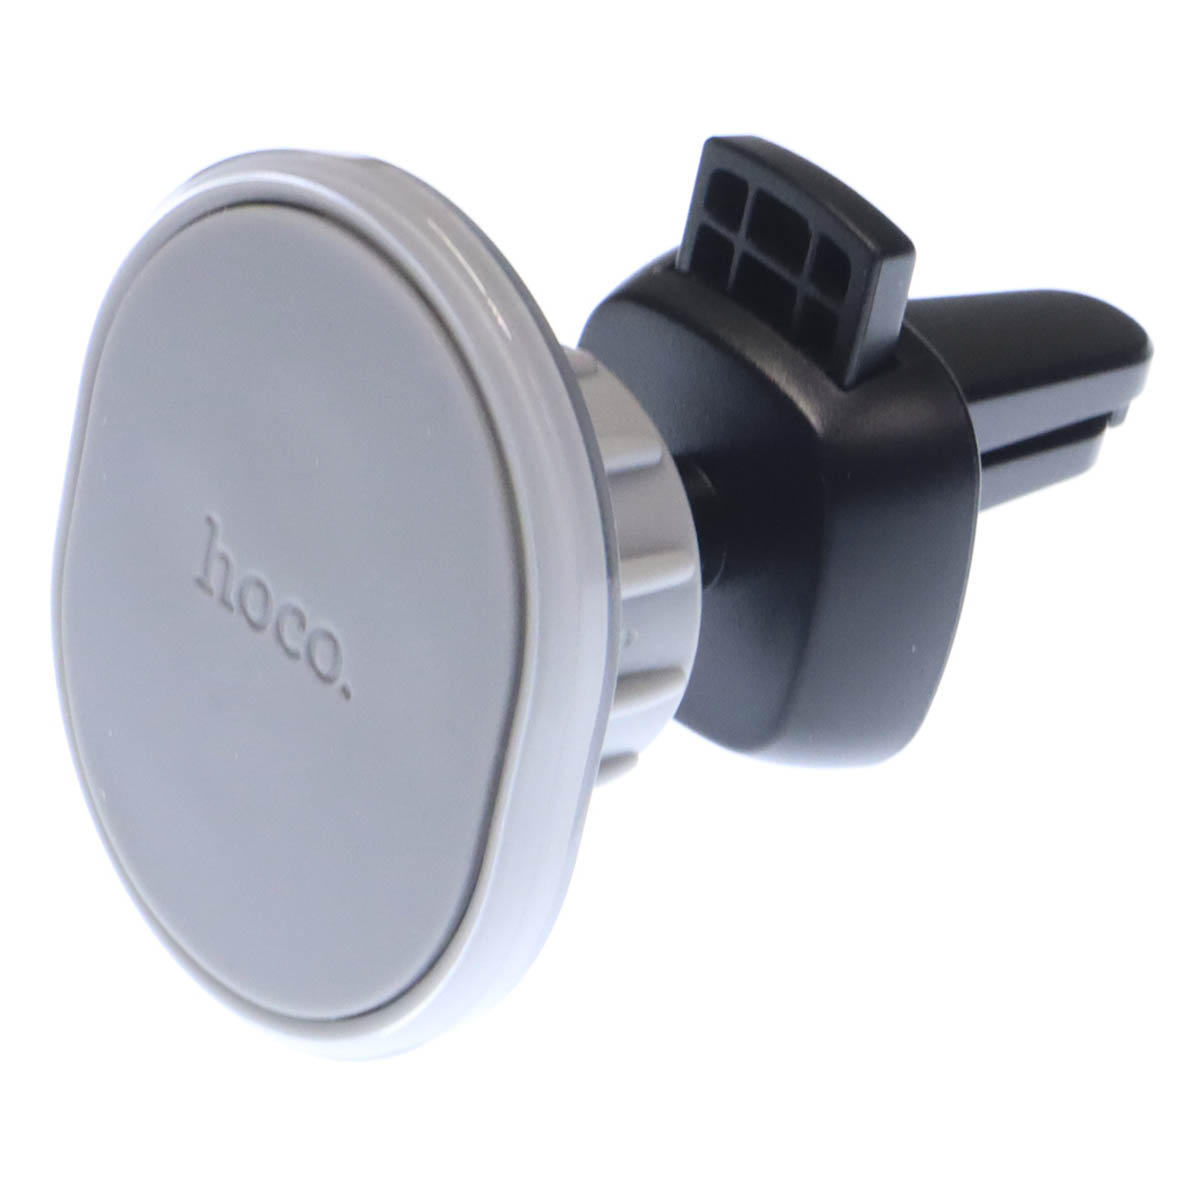 Автомобильный магнитный держатель HOCO H1 Air Outlet для смартфона, в воздуховод, цвет серый